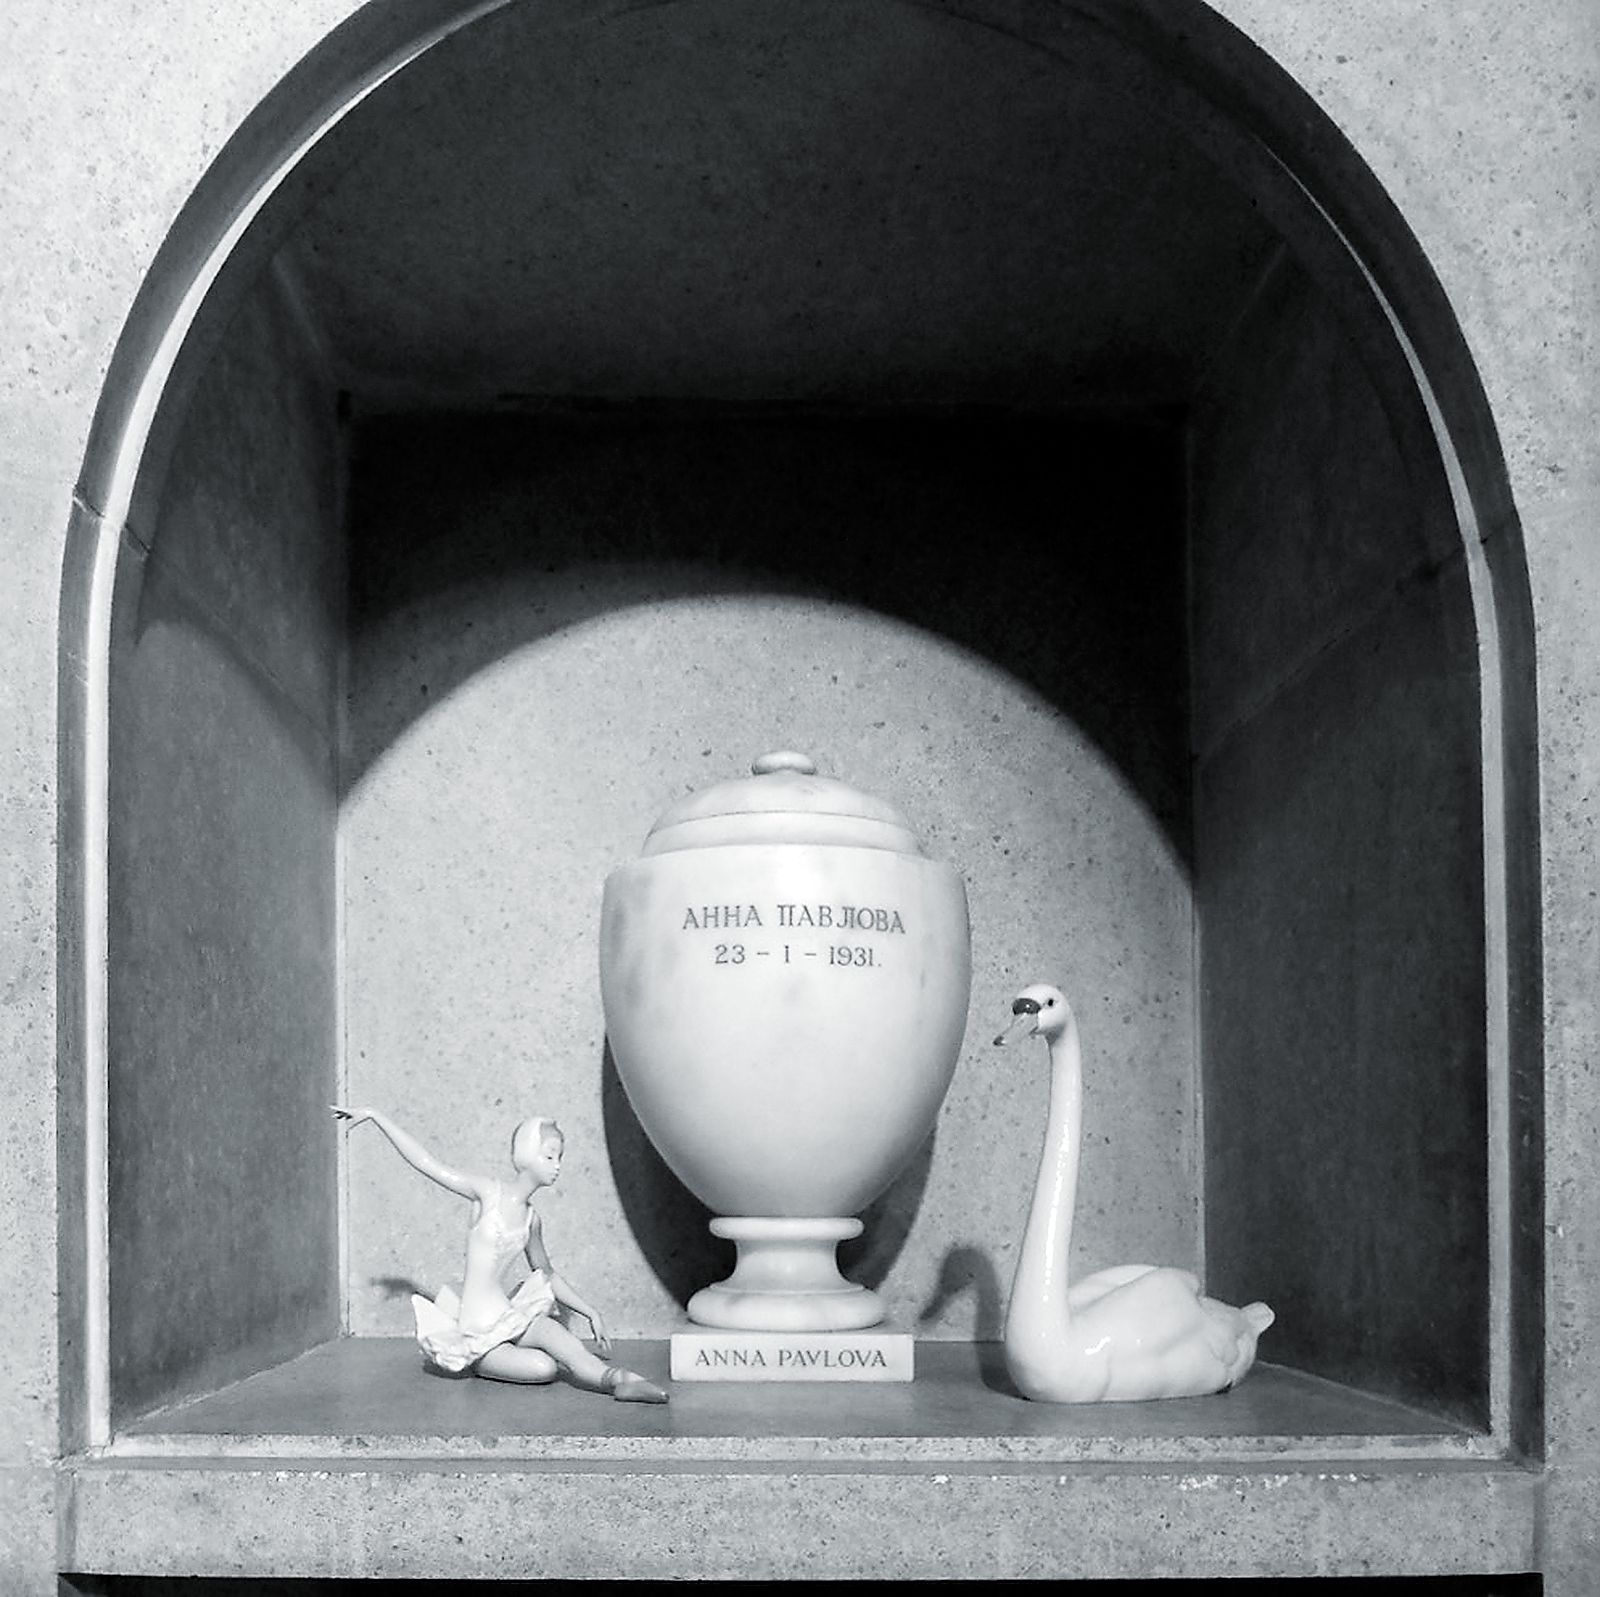 Урна с прахом Анны Павловой в колумбарии крематория Голдерс-Грин